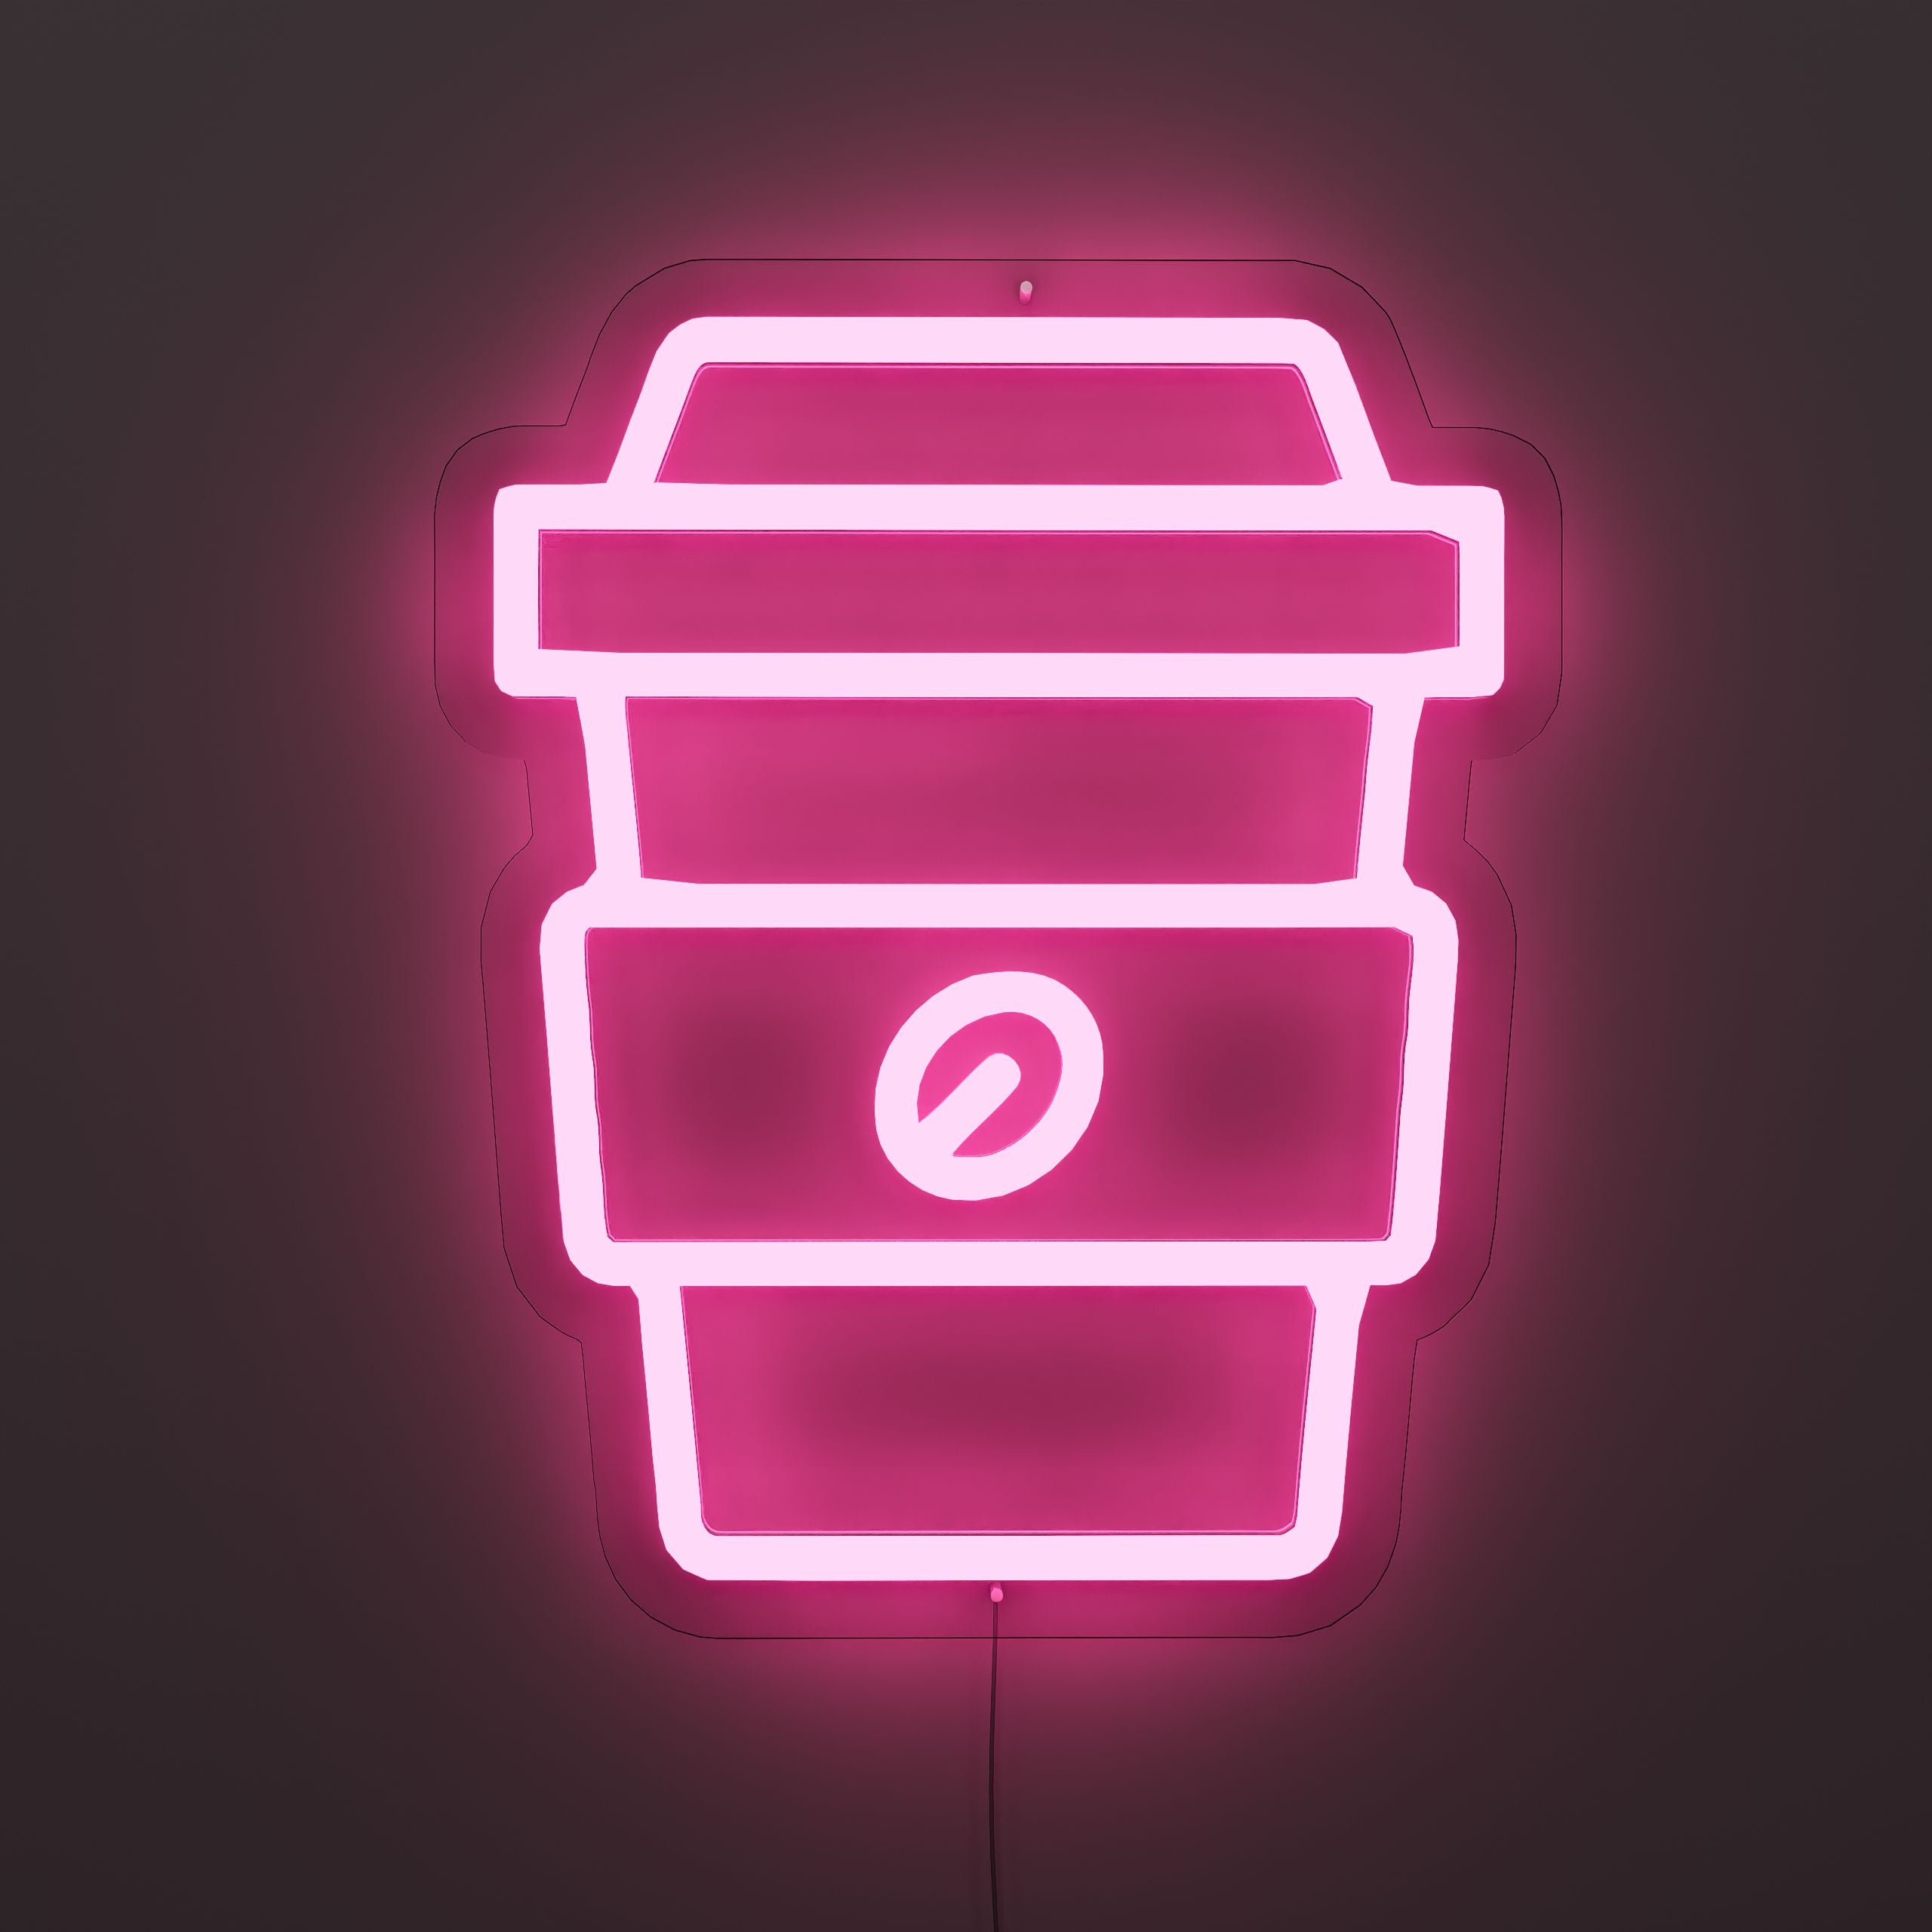 Rich-Coffee-Flavor-Neon-Sign-Lite